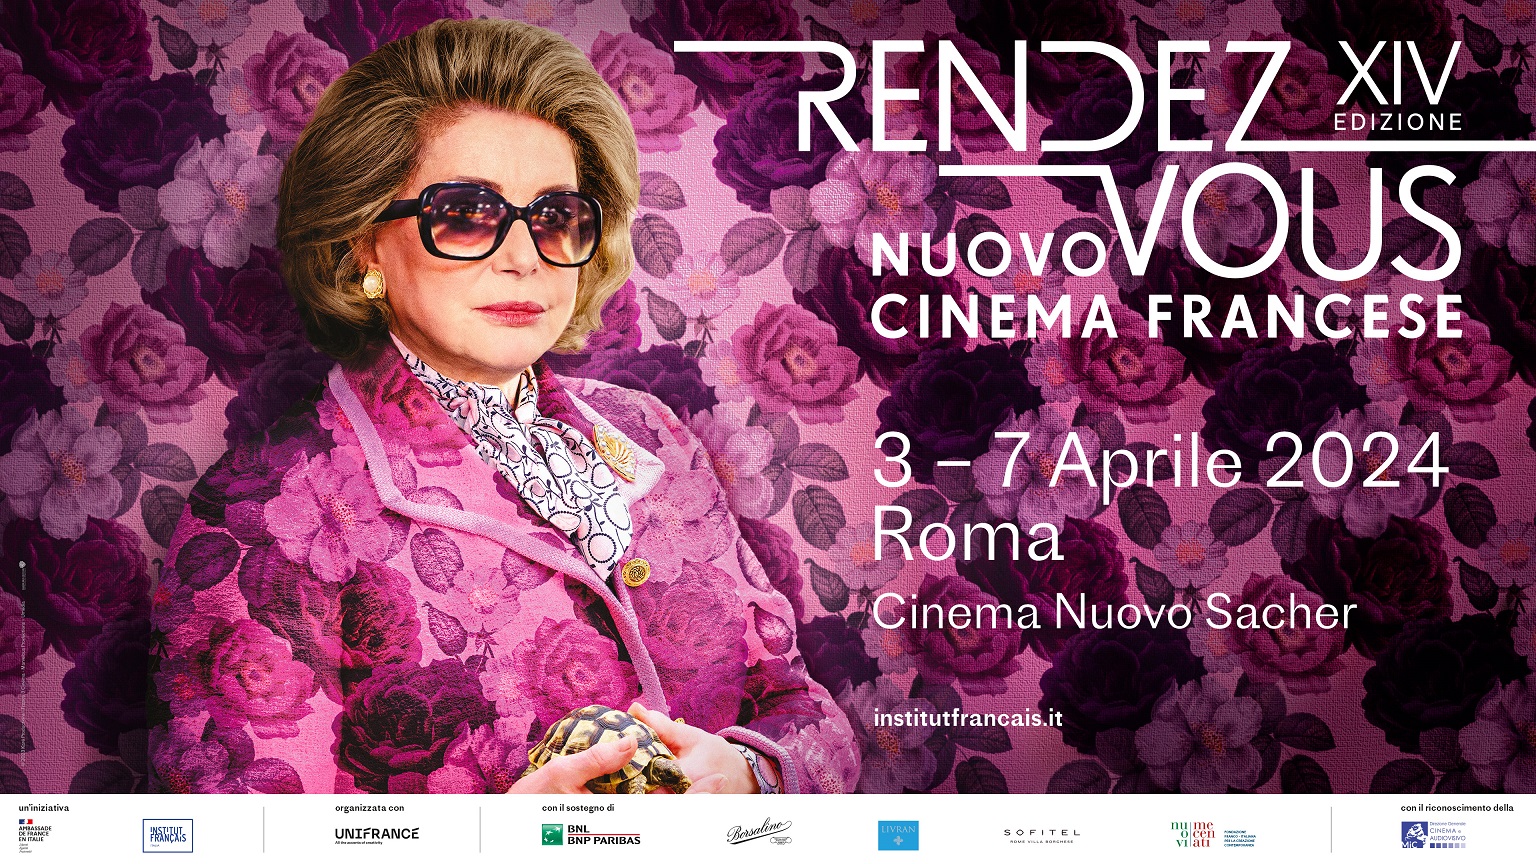 Dal 3 al 7 aprile 2024 torna in Italia RENDEZ-VOUS, il festival dedicato al Cinema Francese